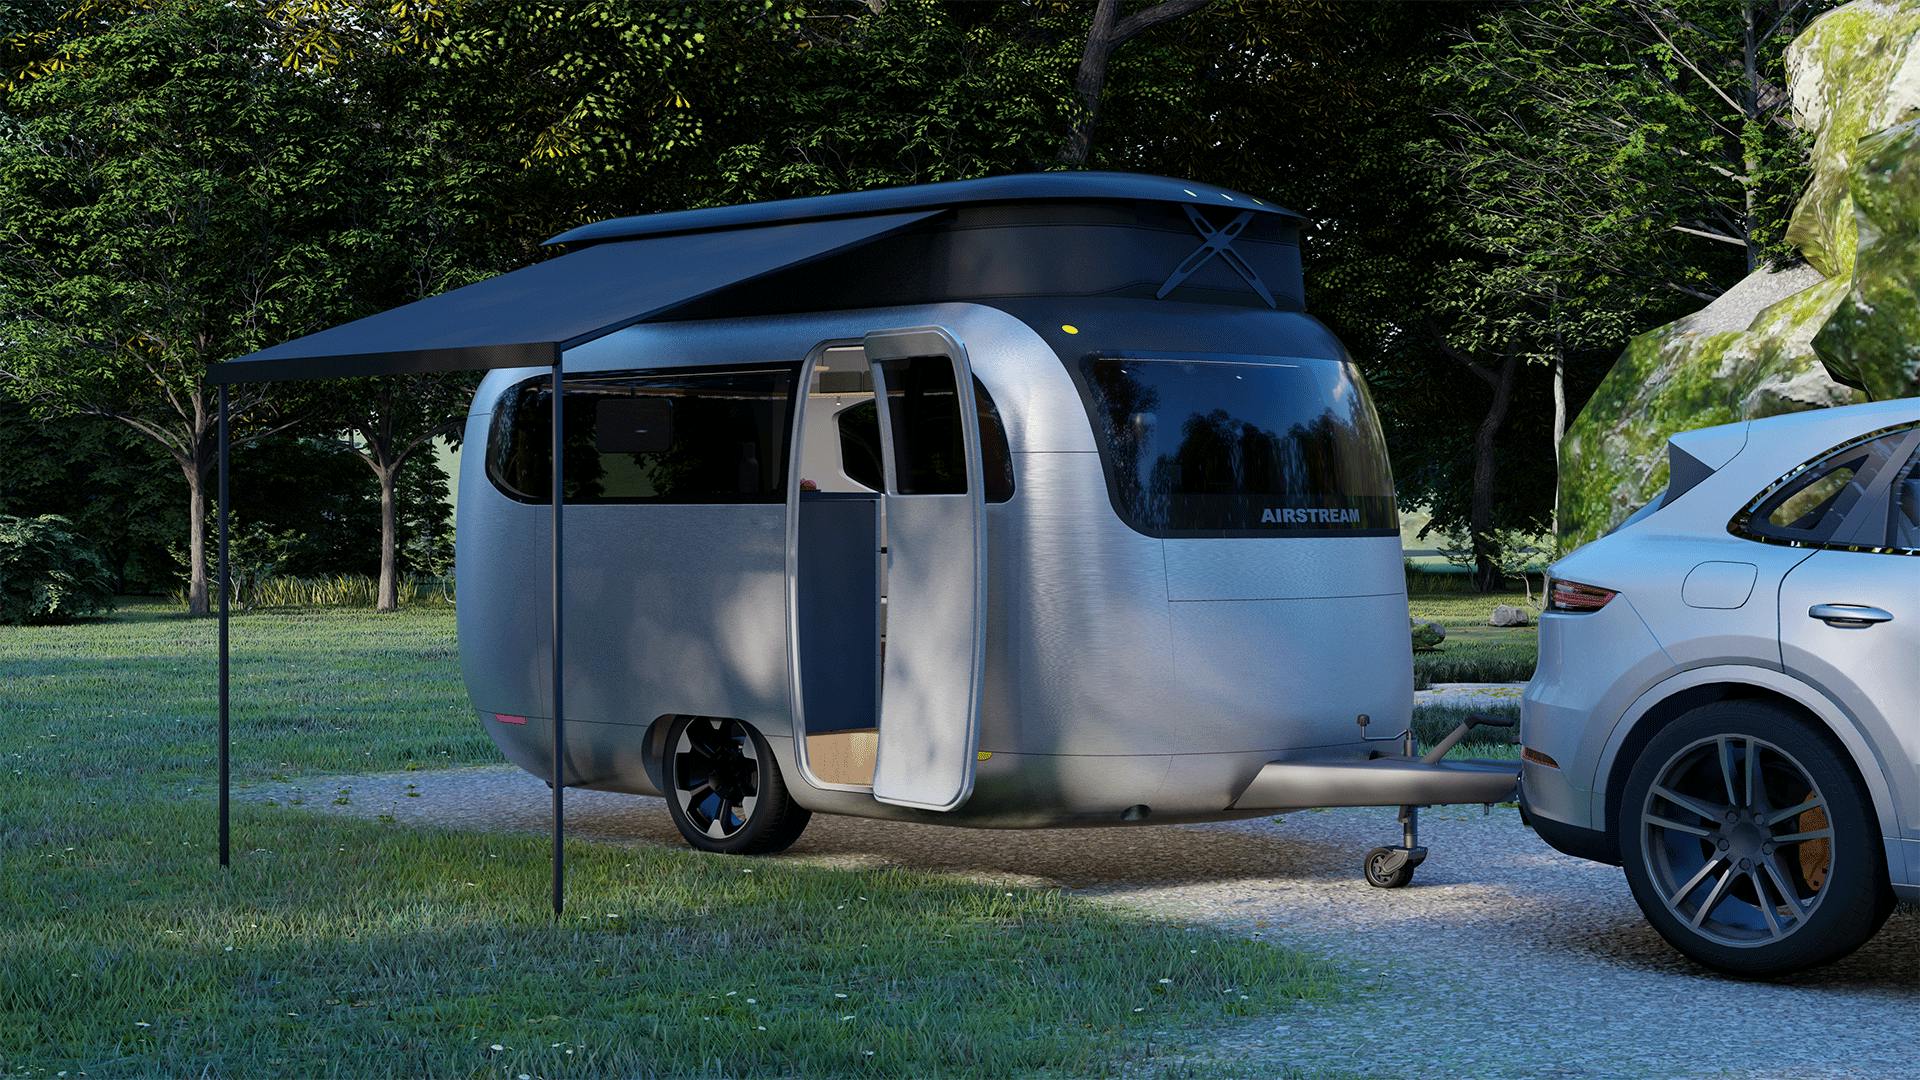 Airstream Porsche camper trailer camp site setup